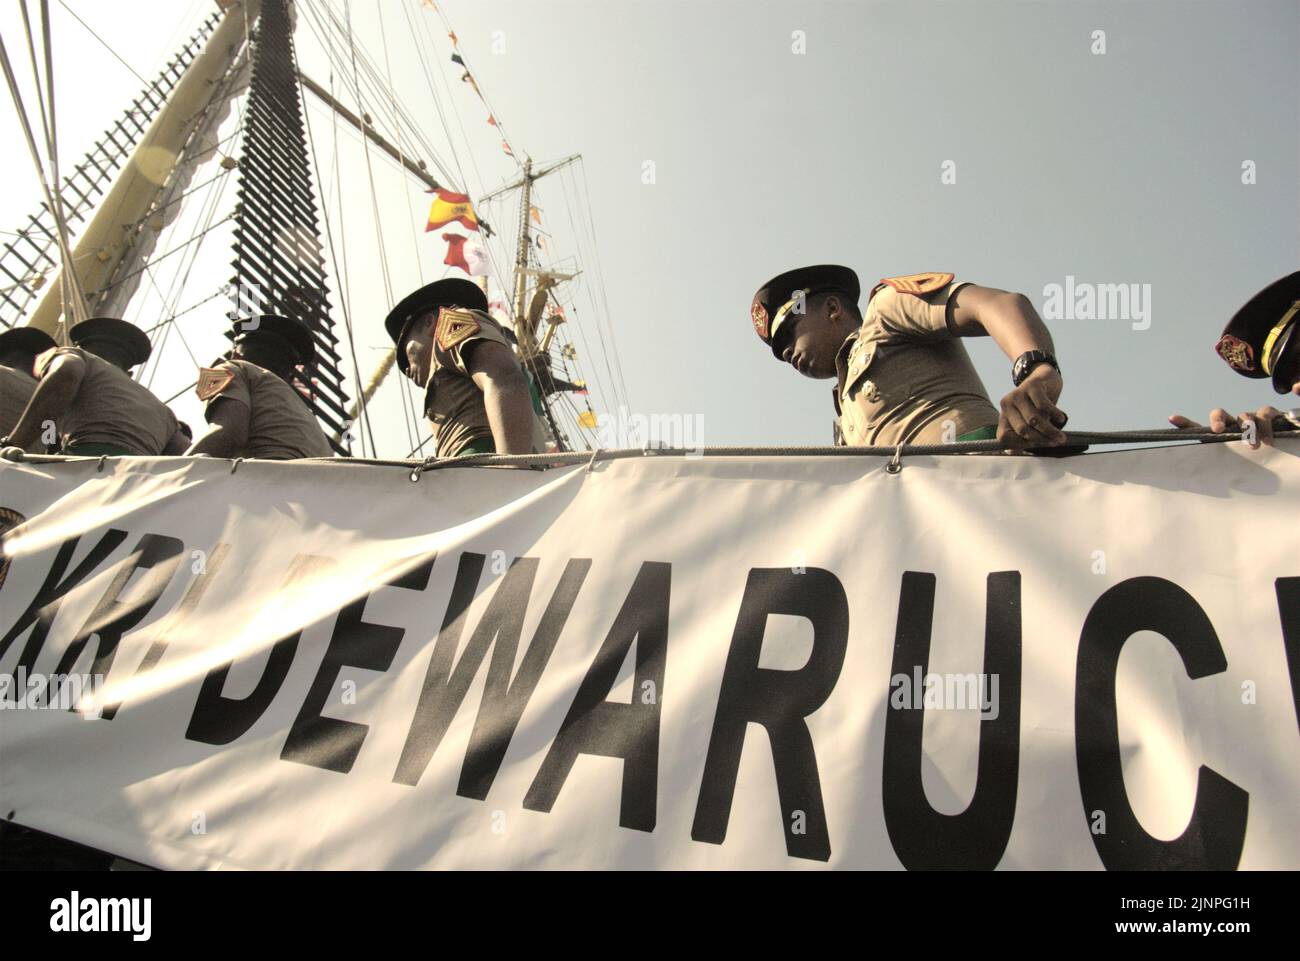 Des cadets de la marine indonésienne qui se promènent sur l'échelle de KRI Dewaruci (Dewa Ruci), un grand navire indonésien, tandis que la goélette de type barquentine est ouverte aux visiteurs du port de Kolinlamil (port de la marine) à Tanjung Priok, dans le nord de Jakarta, en Indonésie. Banque D'Images